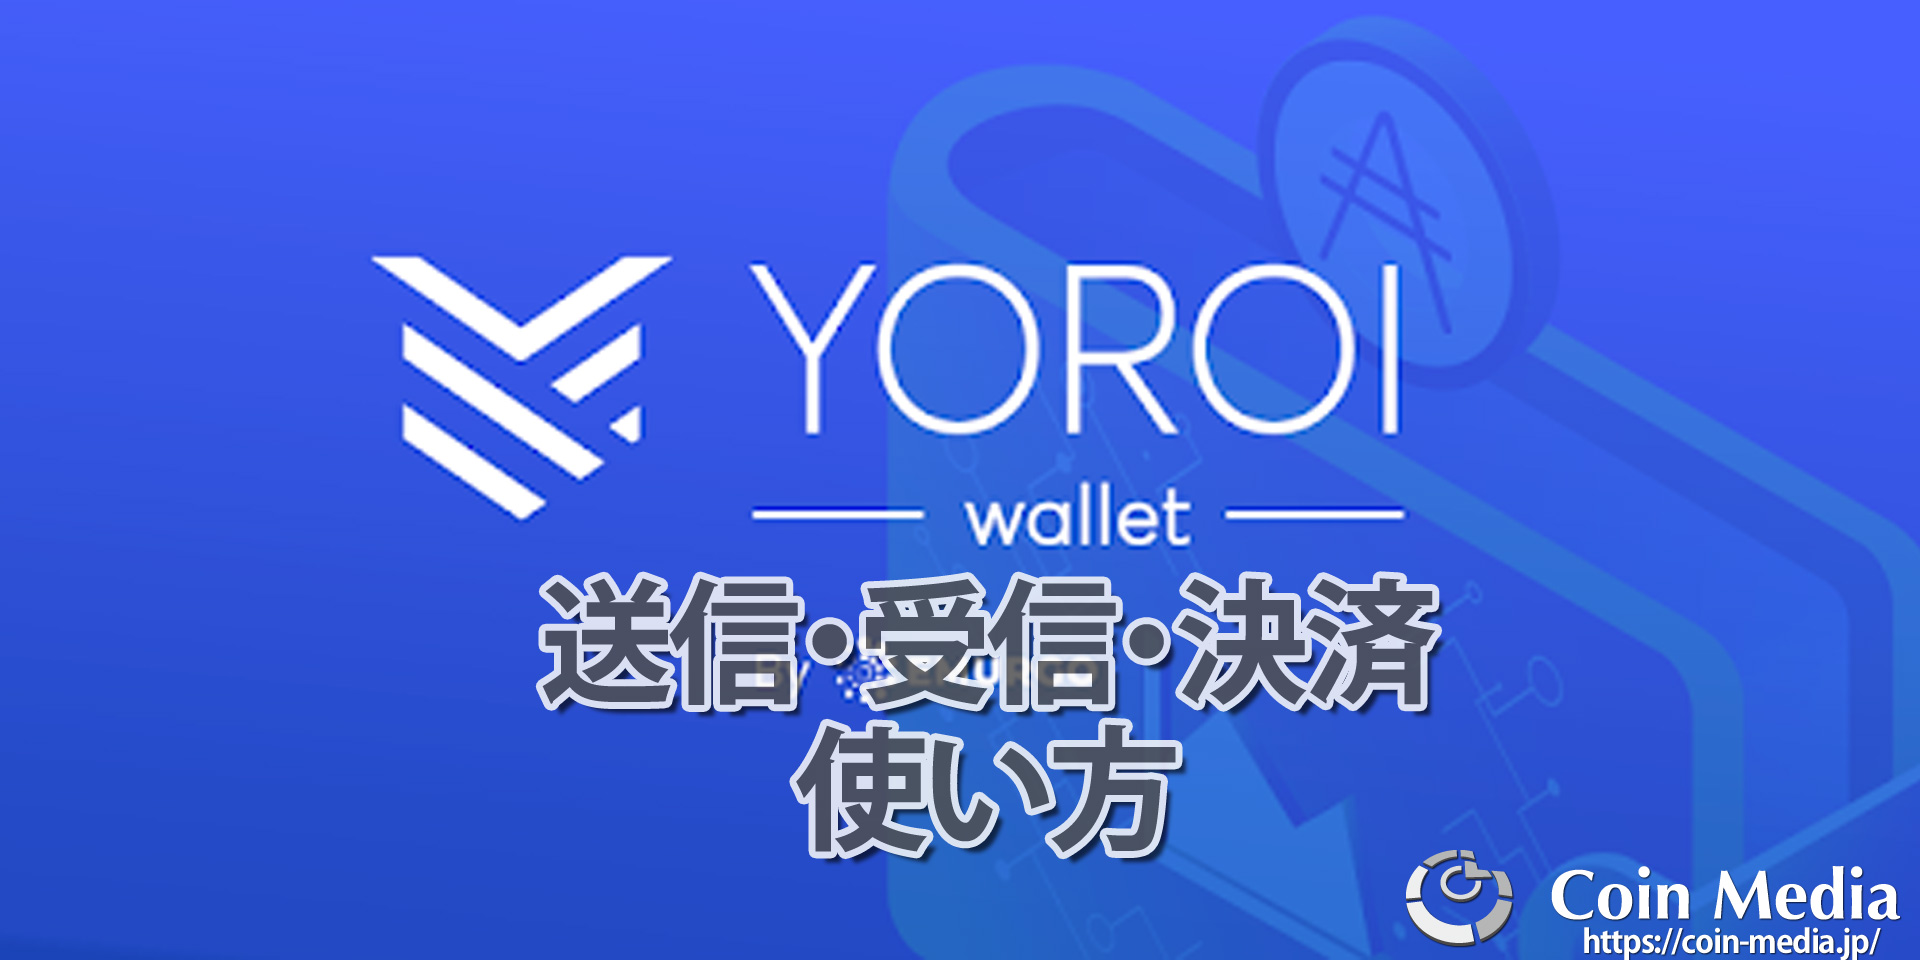 ヨロイウォレット(Yoroi wallet)の使い方(送信/支払い/受信)を画像付きで解説